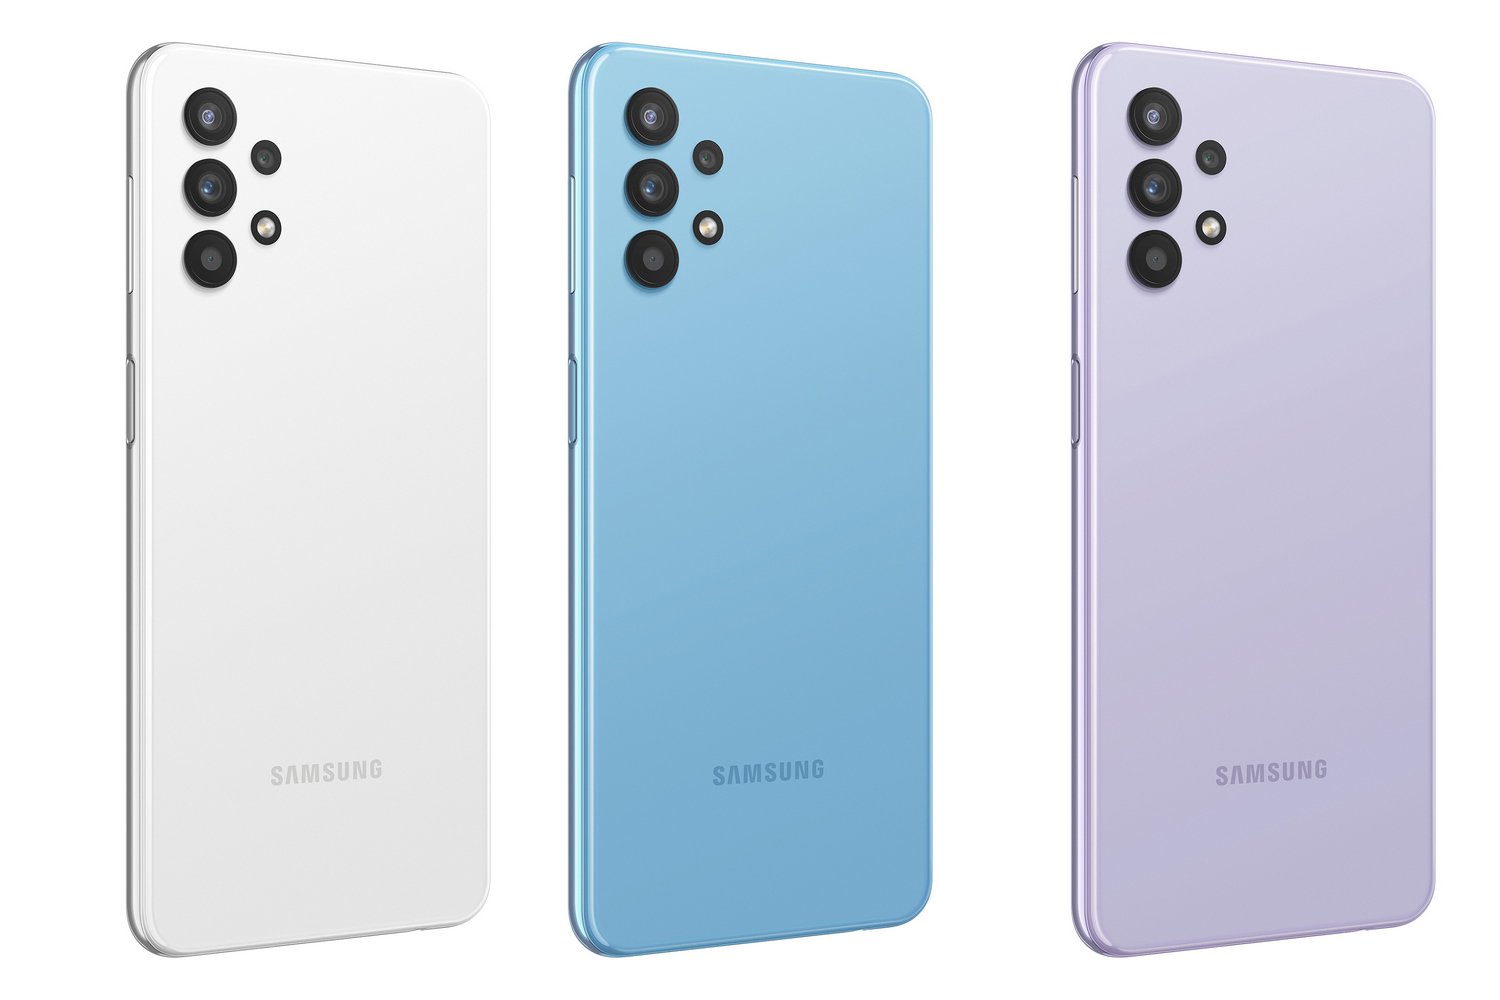 Samsung Galaxy A32 Обзор